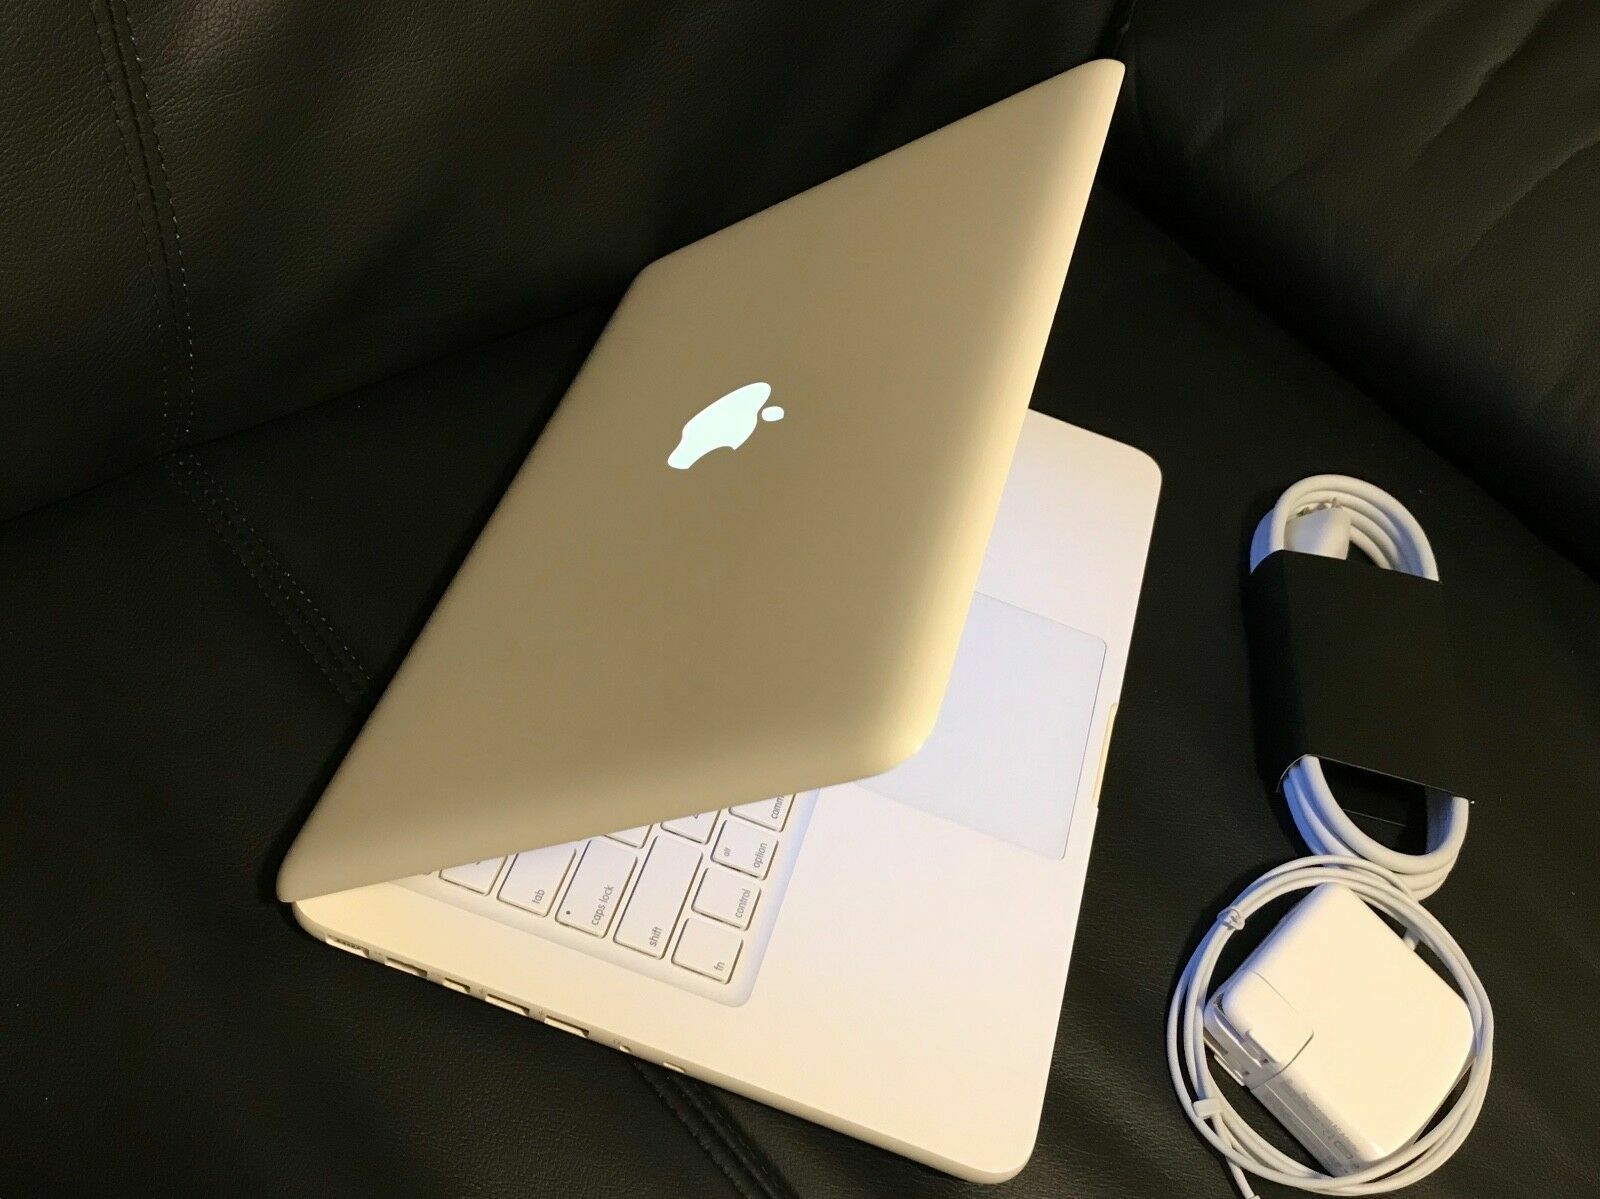 Apple MacBook White 13" A1342 New 1TB HDD, 4GB Ram. OS X High Sierra & Office Apple MC207LL/A, A1342, MC516LL/A